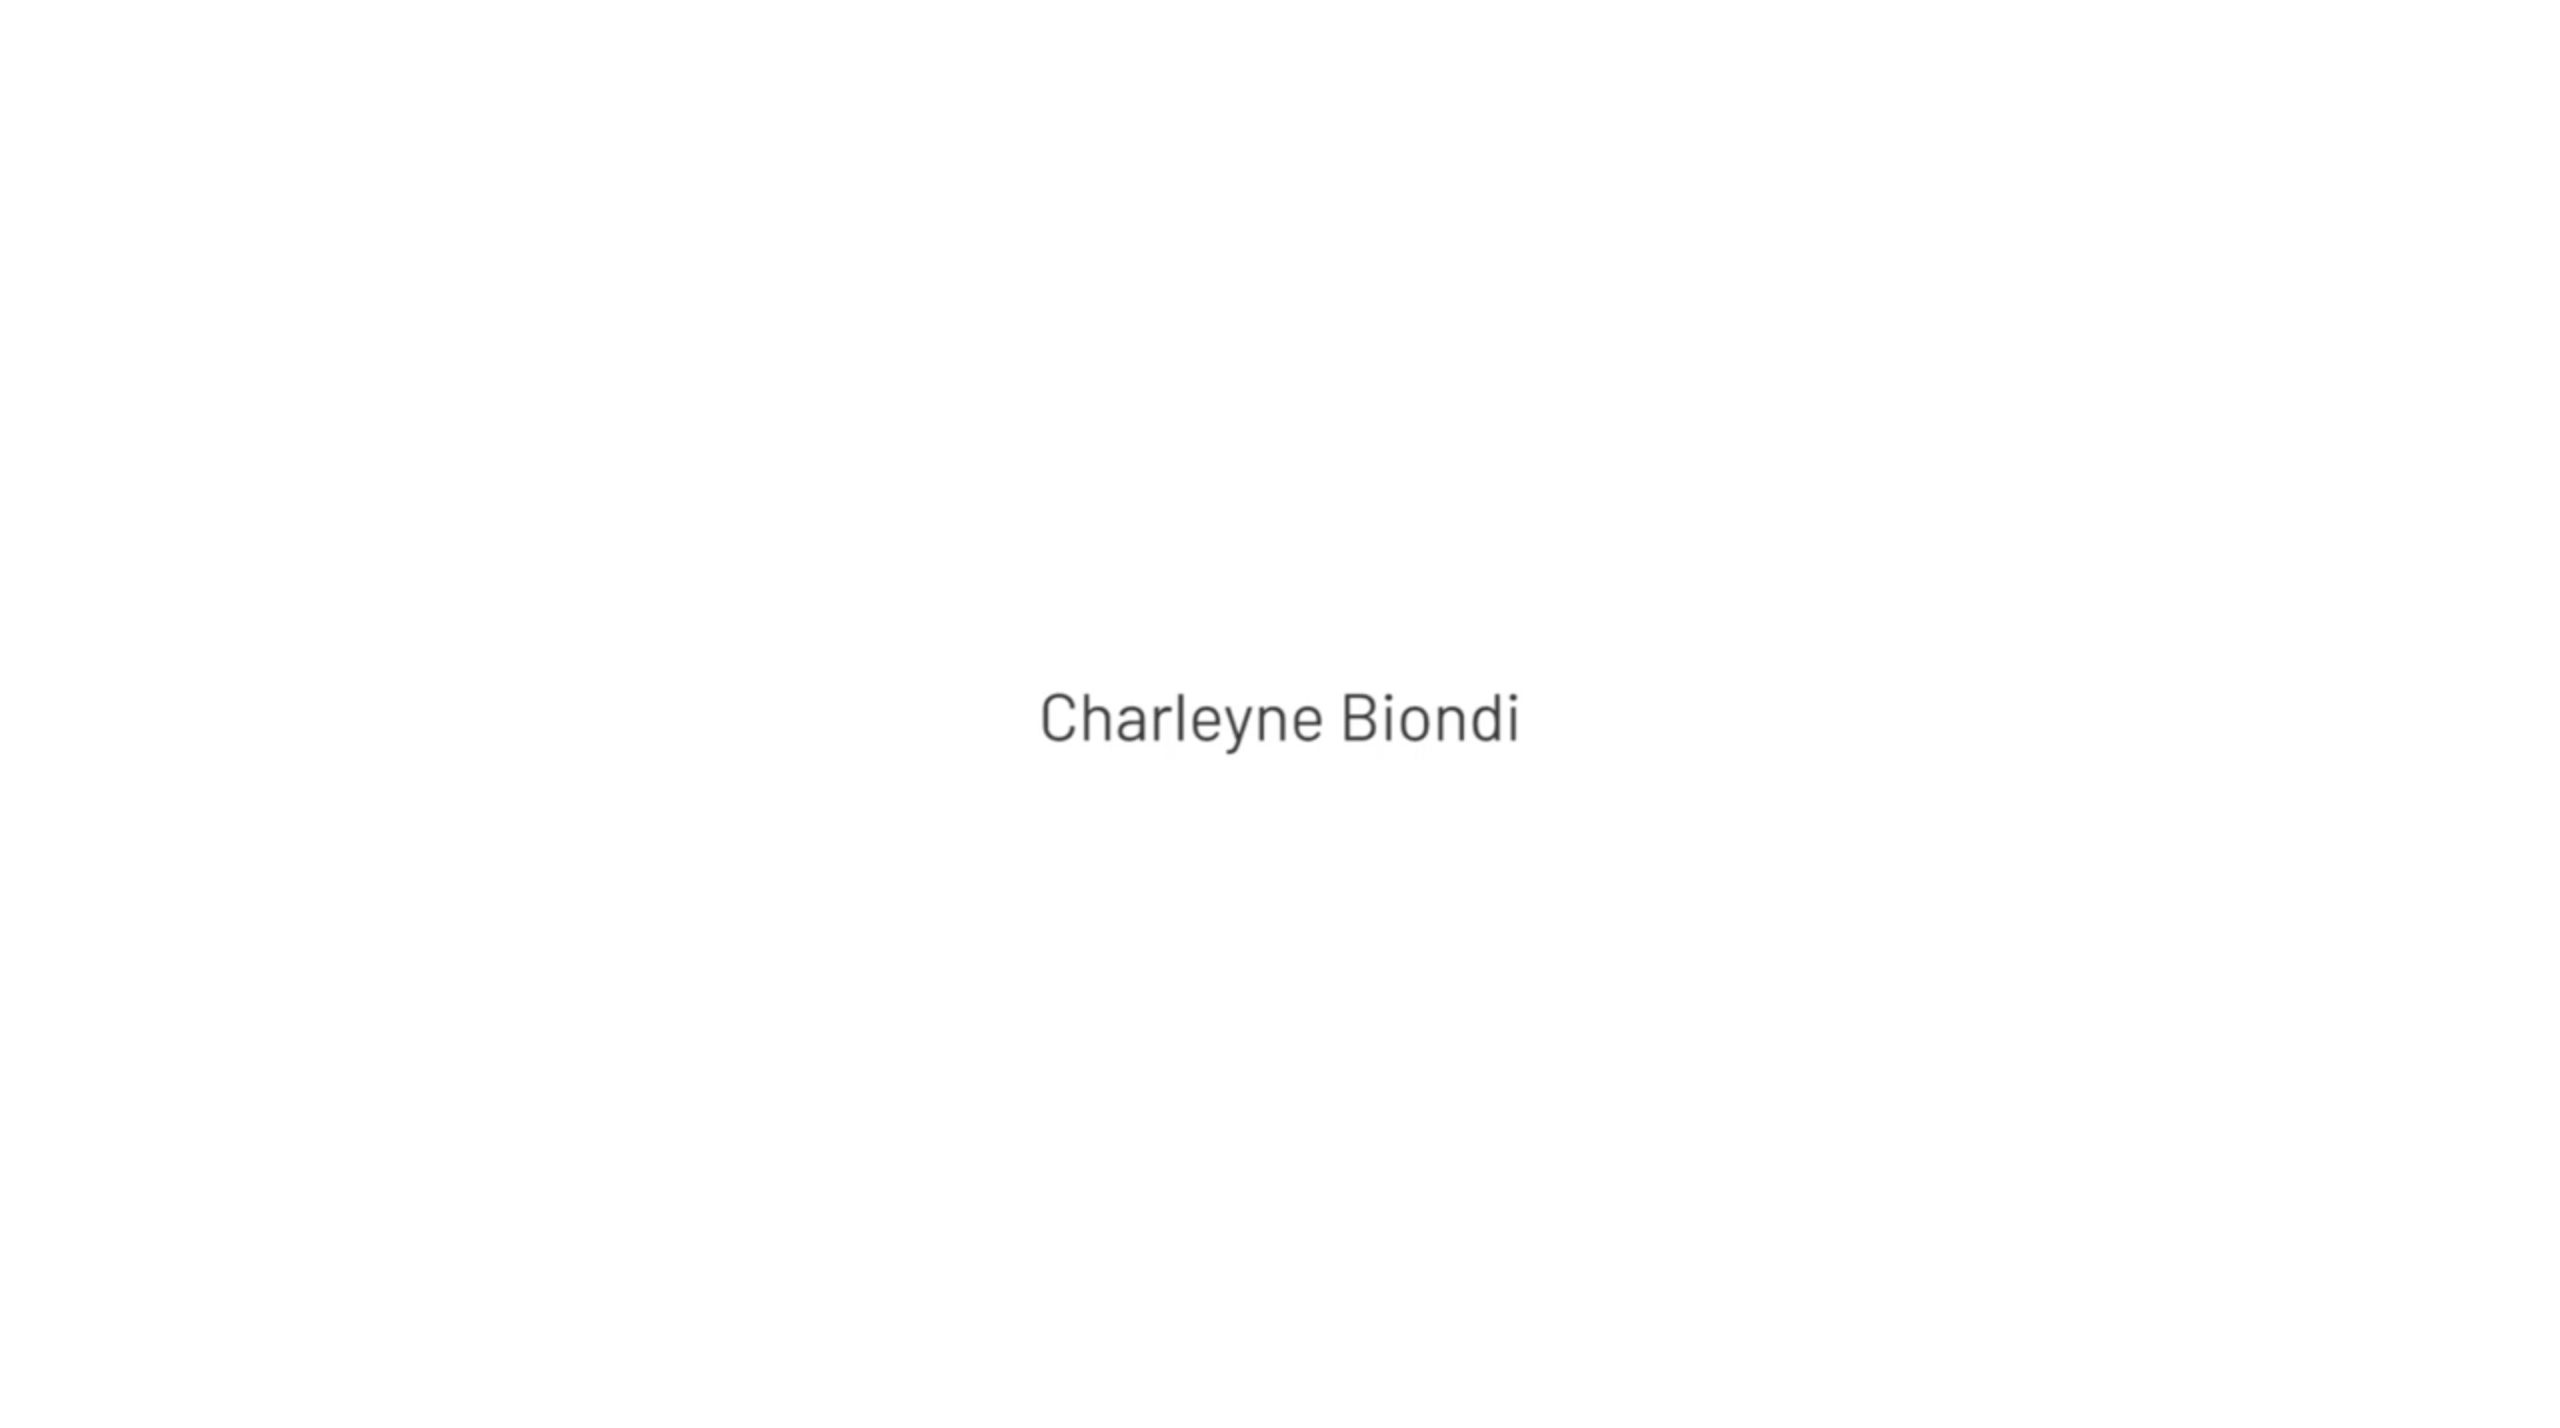 Charleyne Biondi